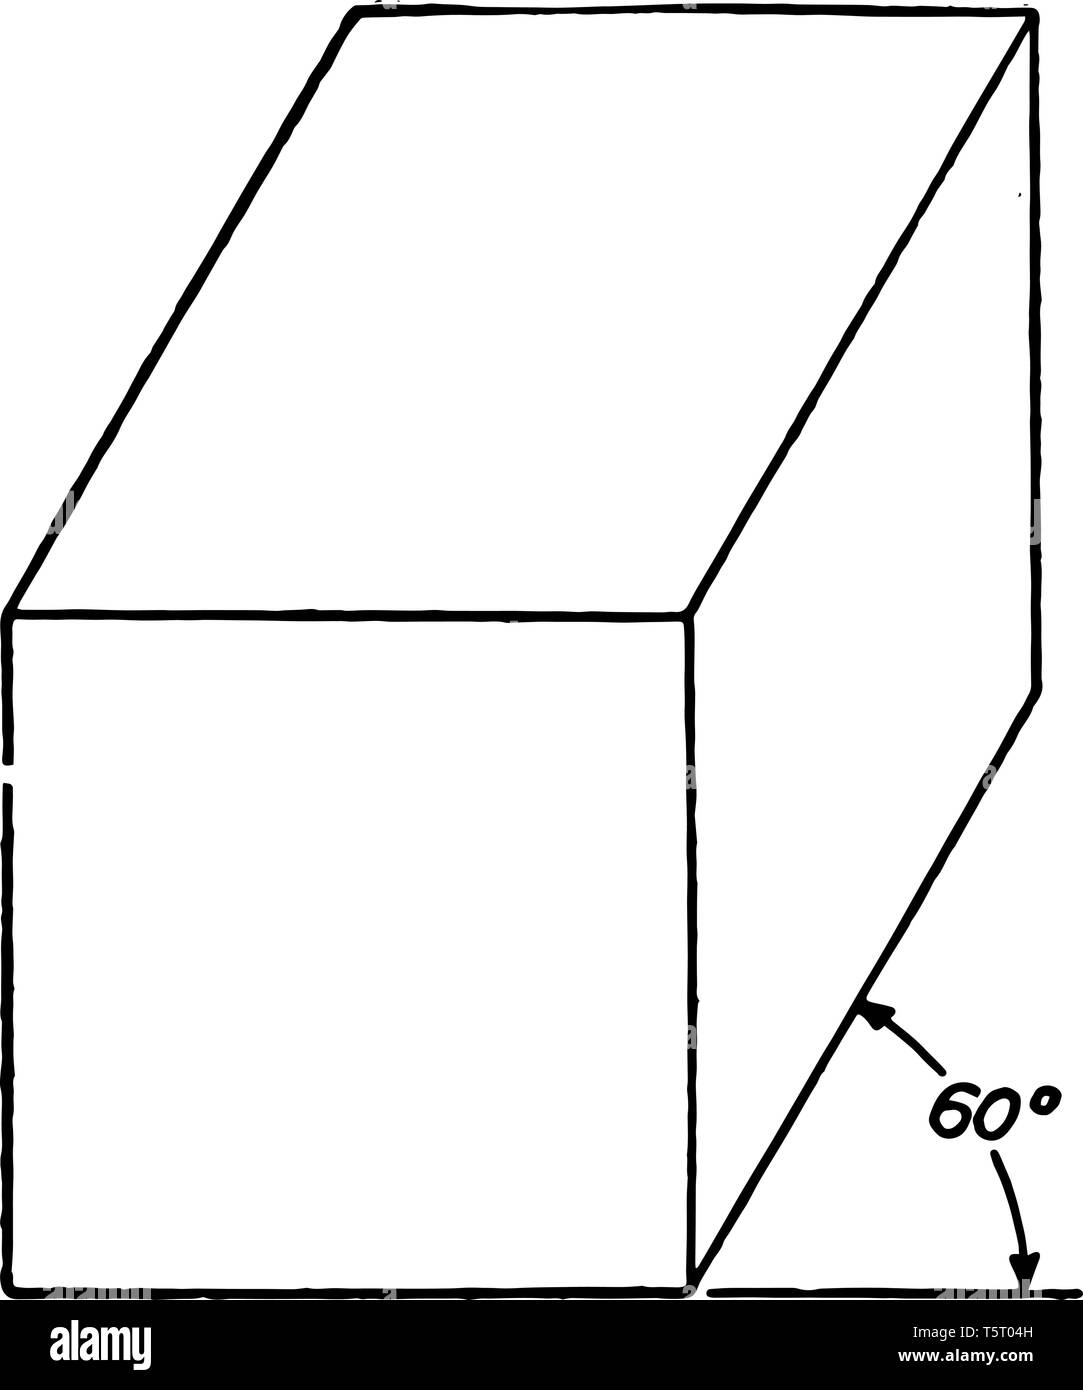 Das Bild zeigt eine oblique Ansicht eines massiven, rechteckigen 60 Prisma, vintage Strichzeichnung oder Gravur Abbildung. Stock Vektor